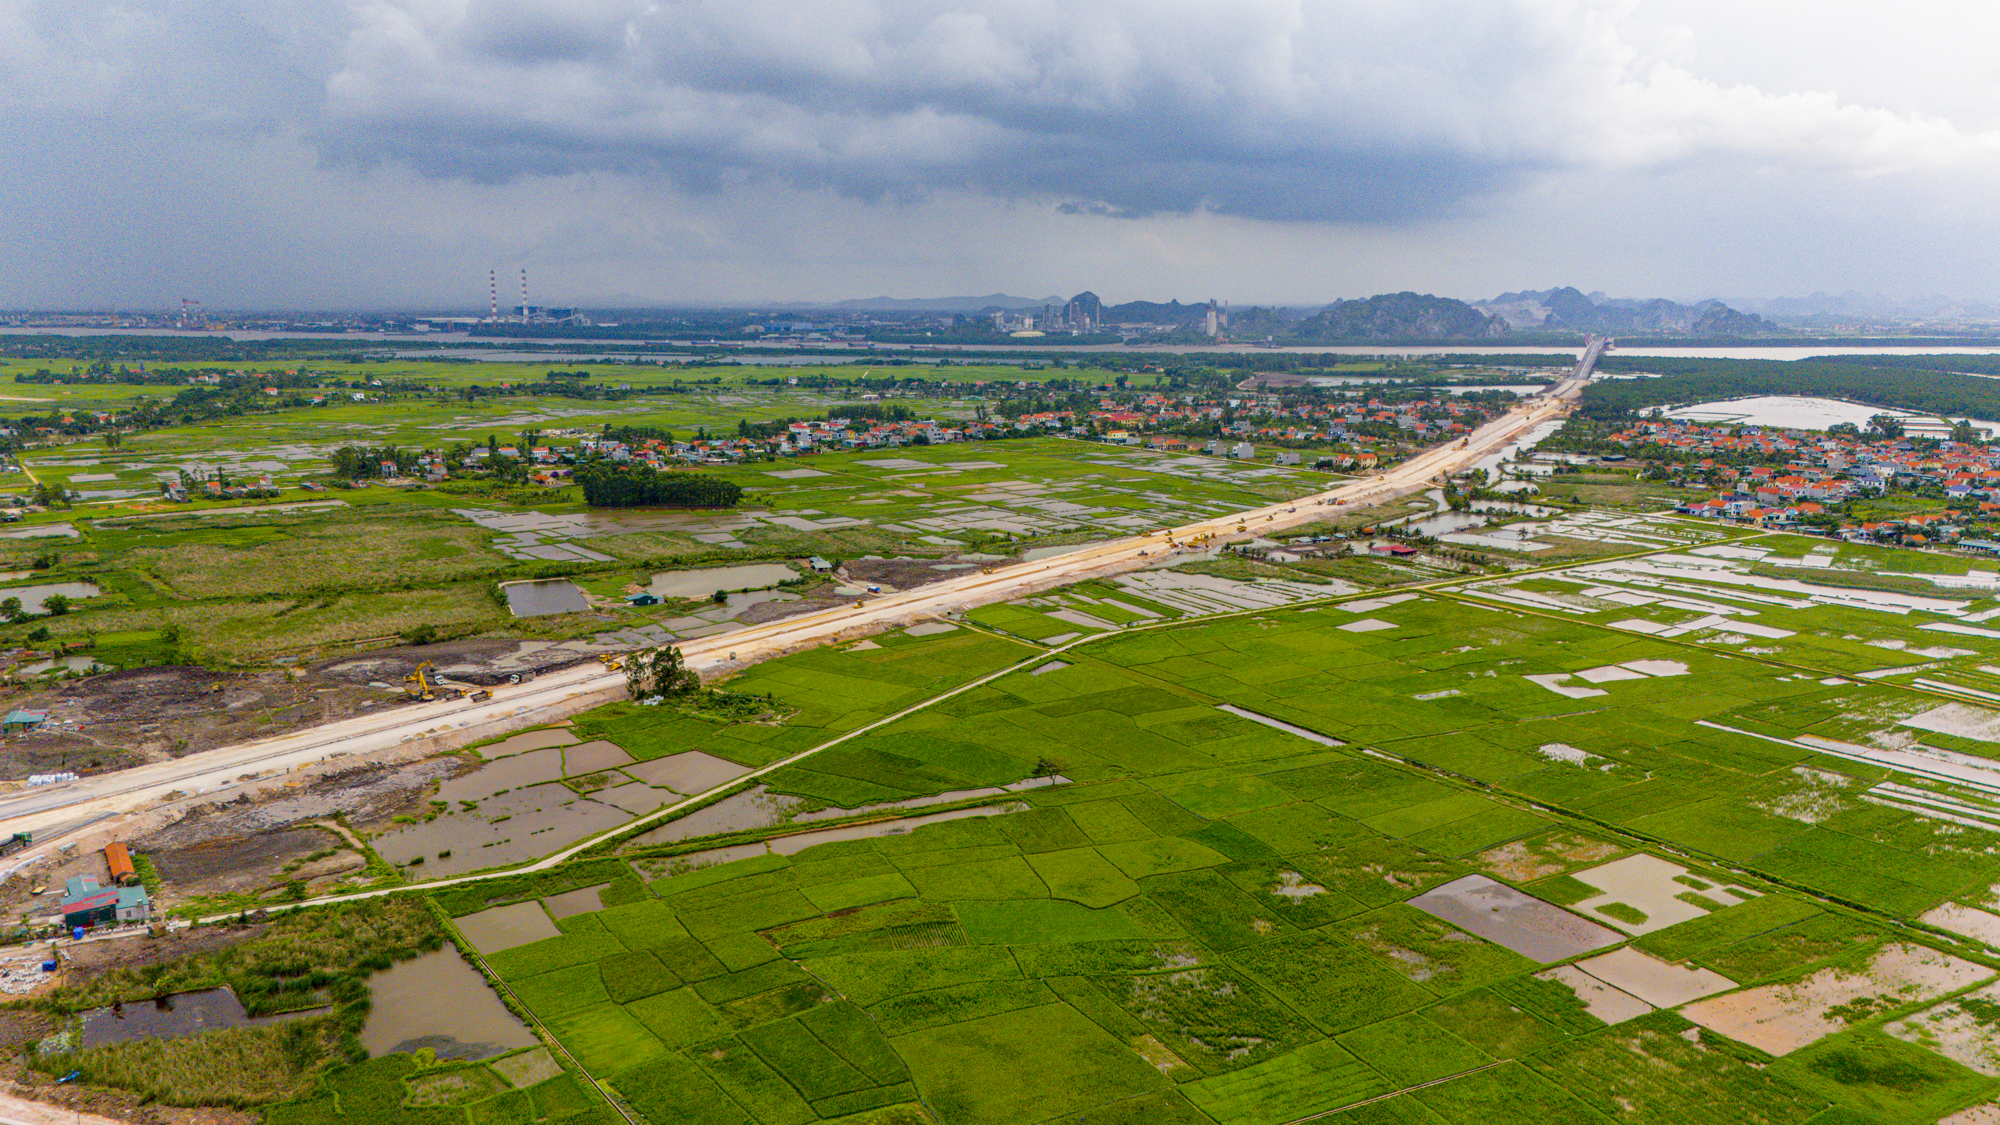 Thị xã là hạt nhân tăng trưởng mới của Quảng Ninh, được đầu tư chỉ sau Hạ Long, có khu kinh tế thu hút tỷ USD, sắp lên thành phố- Ảnh 10.